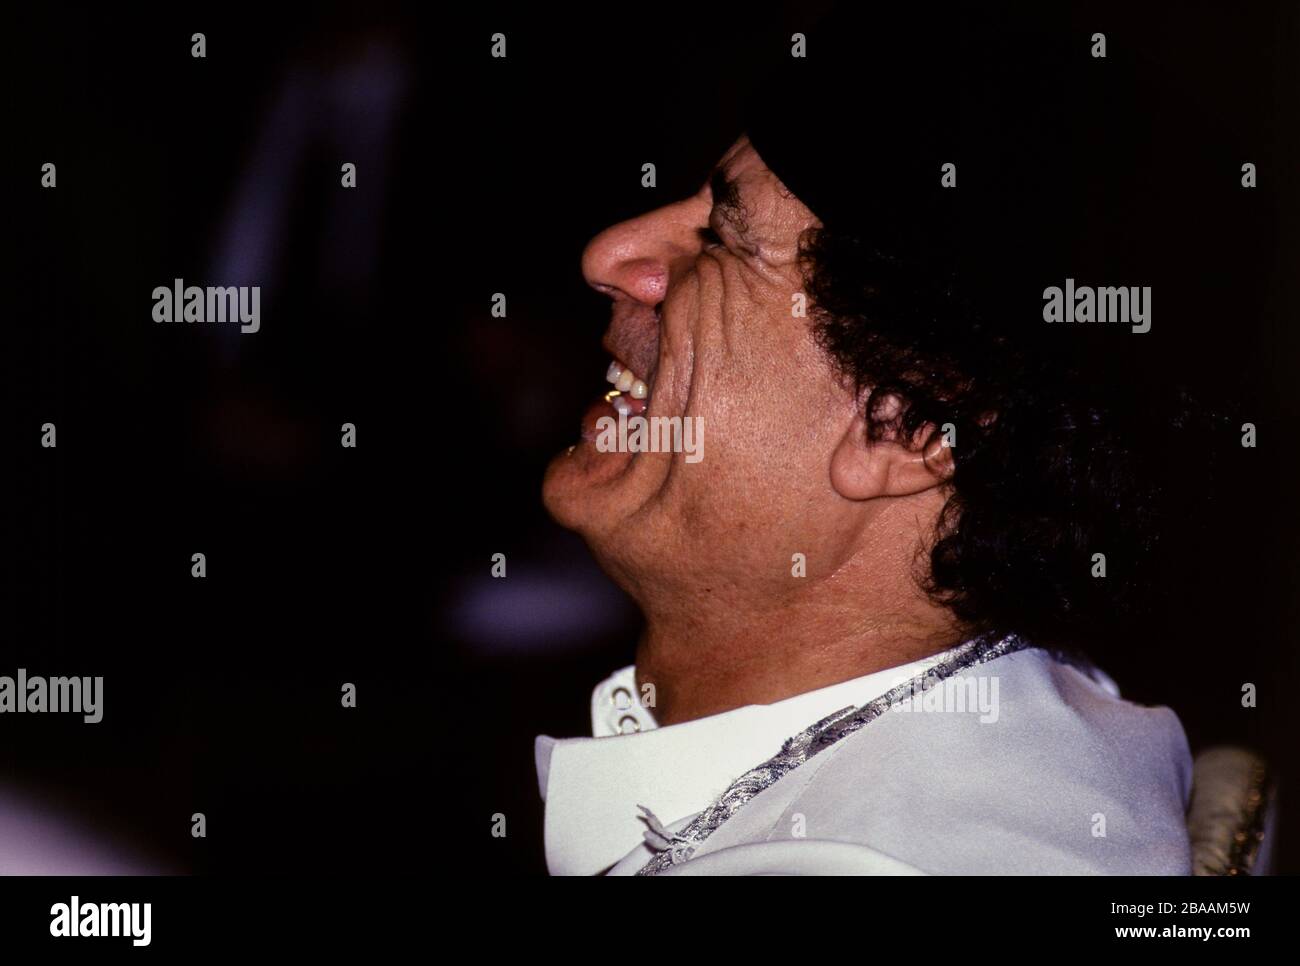 Le Caire, Egypte - 21-23 juin 1996 - le Président libyen Mouammar Kadhafi au Sommet arabe de la capitale égyptienne, où les dirigeants arabes se sont réunis pour examiner l'évolution de la région, et pour relancer, renforcer et intensifier l'action arabe conjointe. Banque D'Images